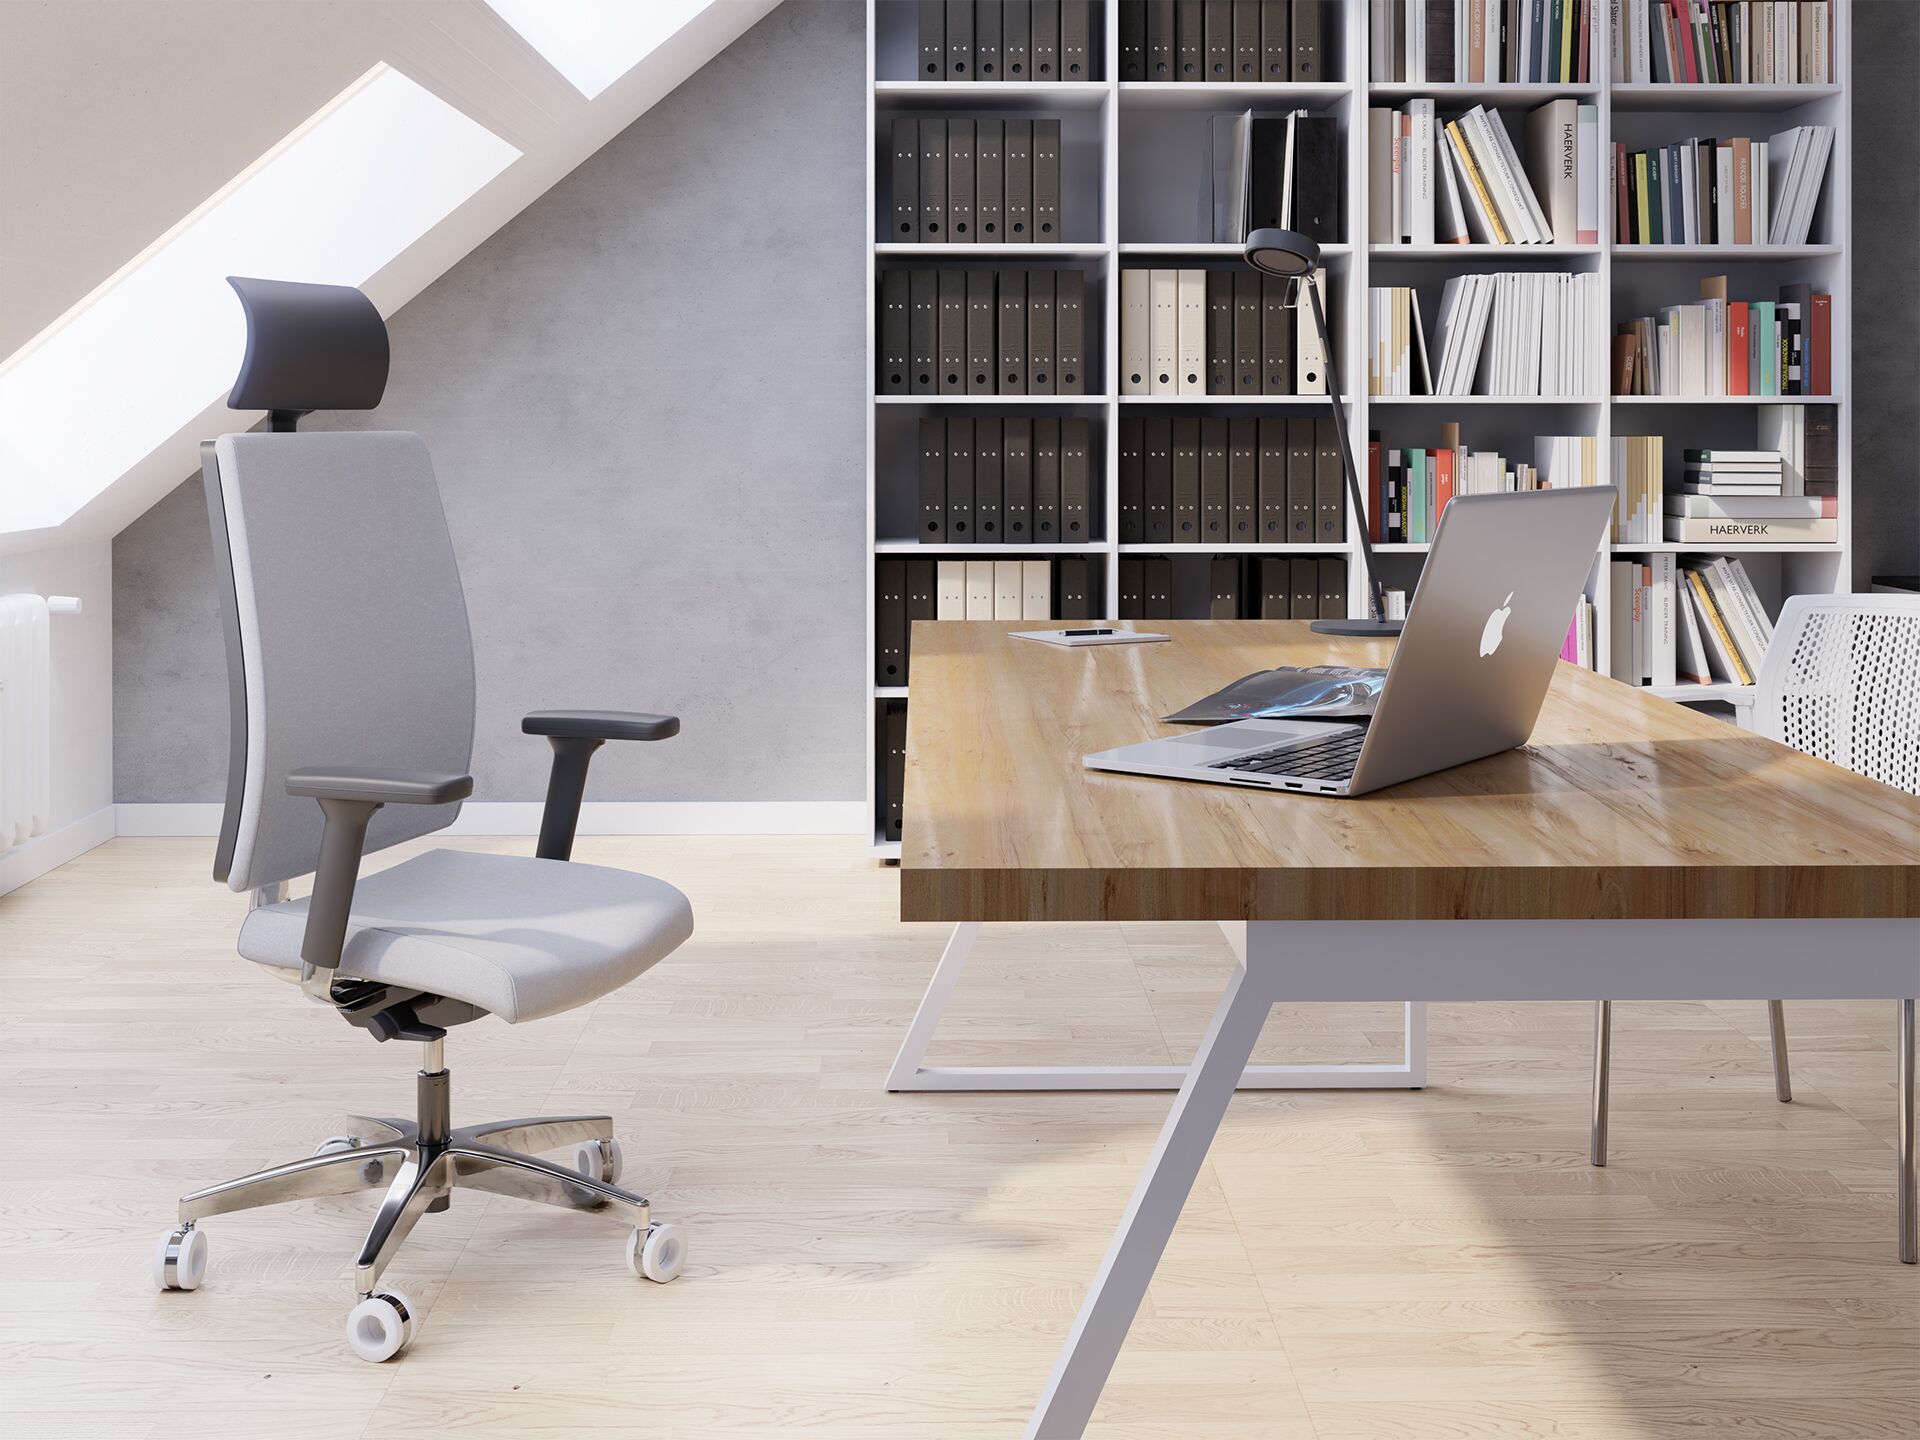 Fotel biurowy metalowy z białym siedziskiem stojący przy drewnianym biurku na którym jest laptop w tle widać biblioteczkę